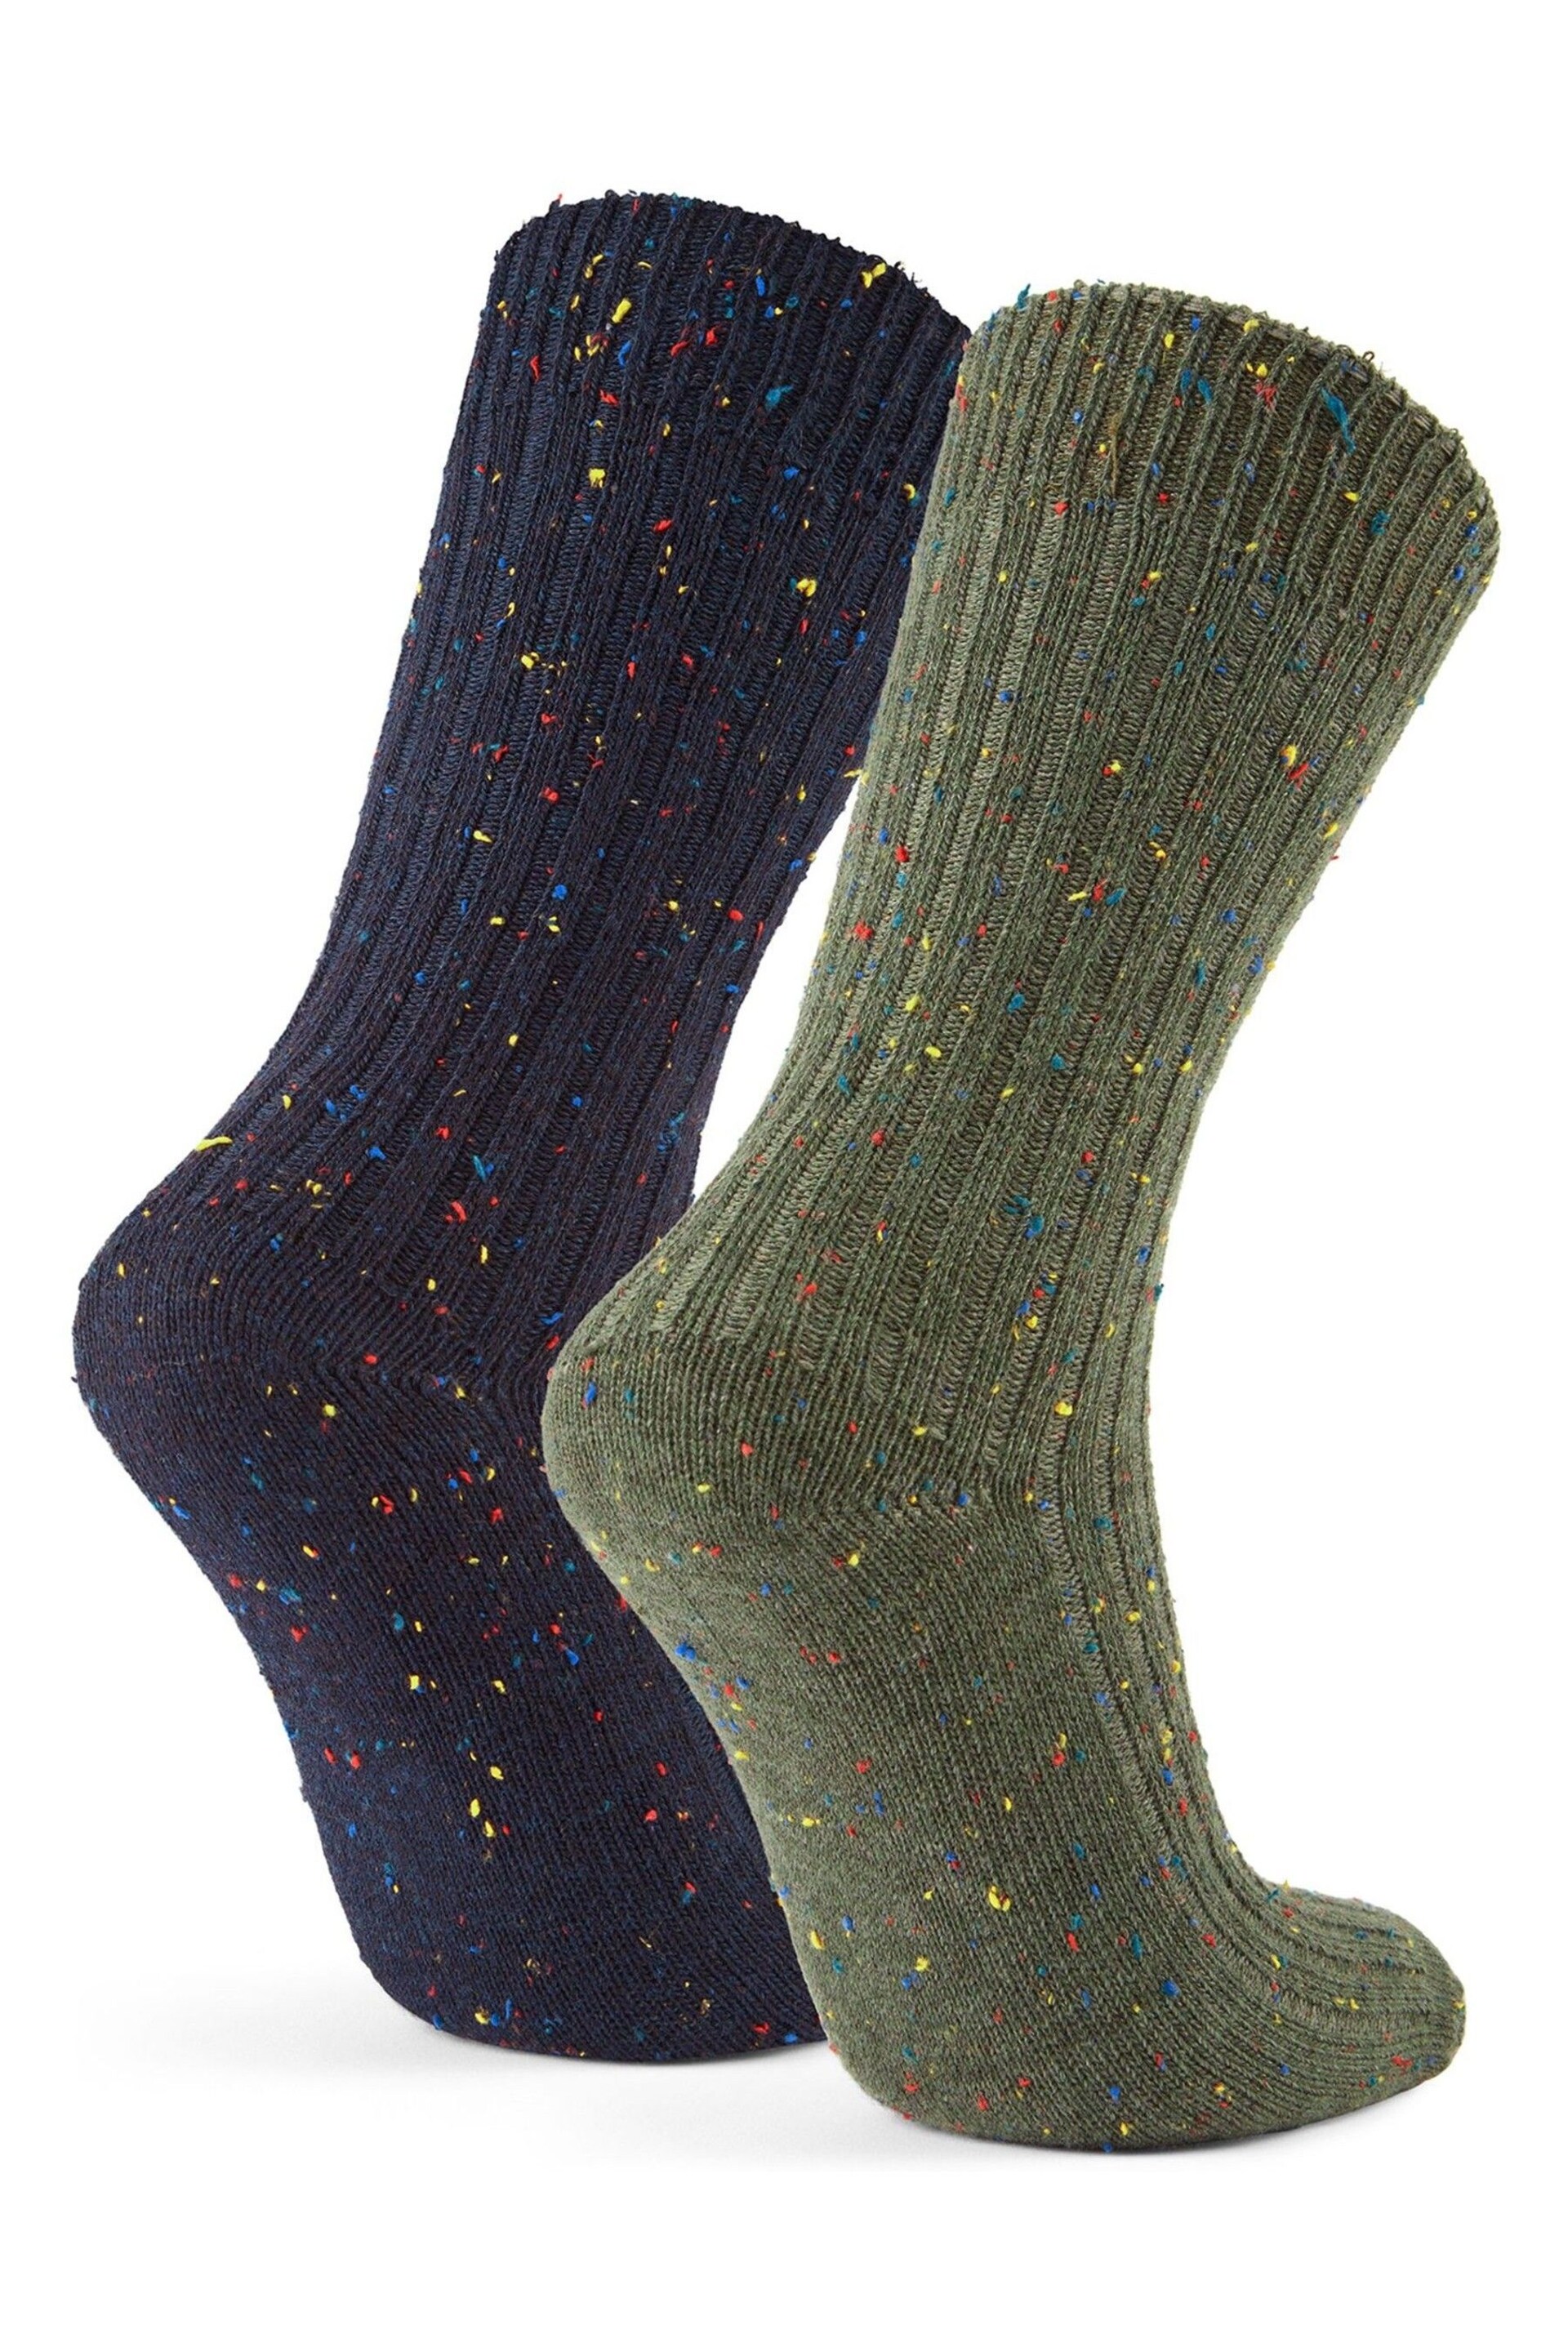 Tog 24 Blue Opora Socks 2 Packs - Image 2 of 2